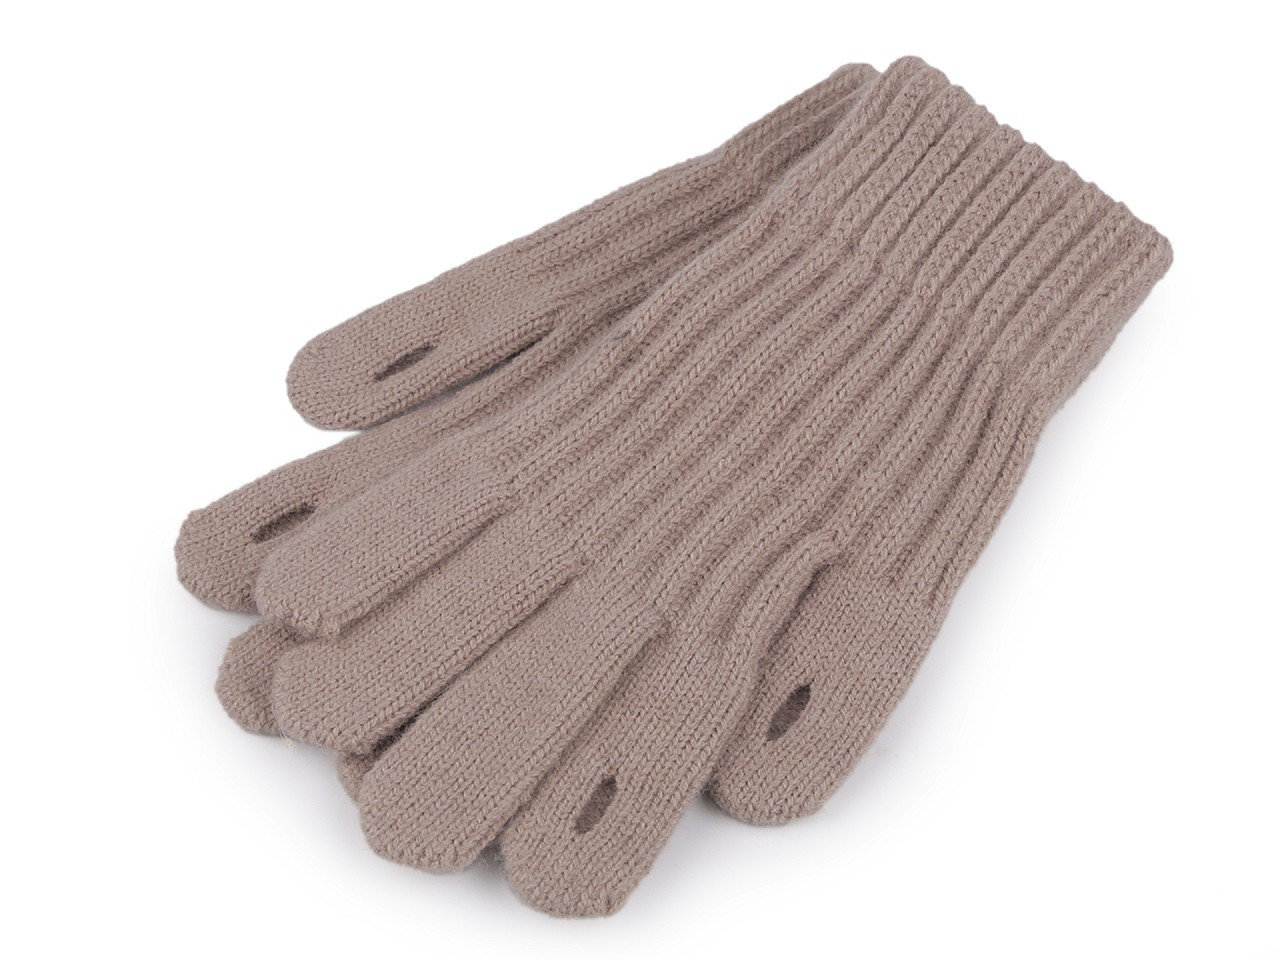 Pletené rukavice s otvory pro ovládání dotykových zařízení, barva 1 béžová